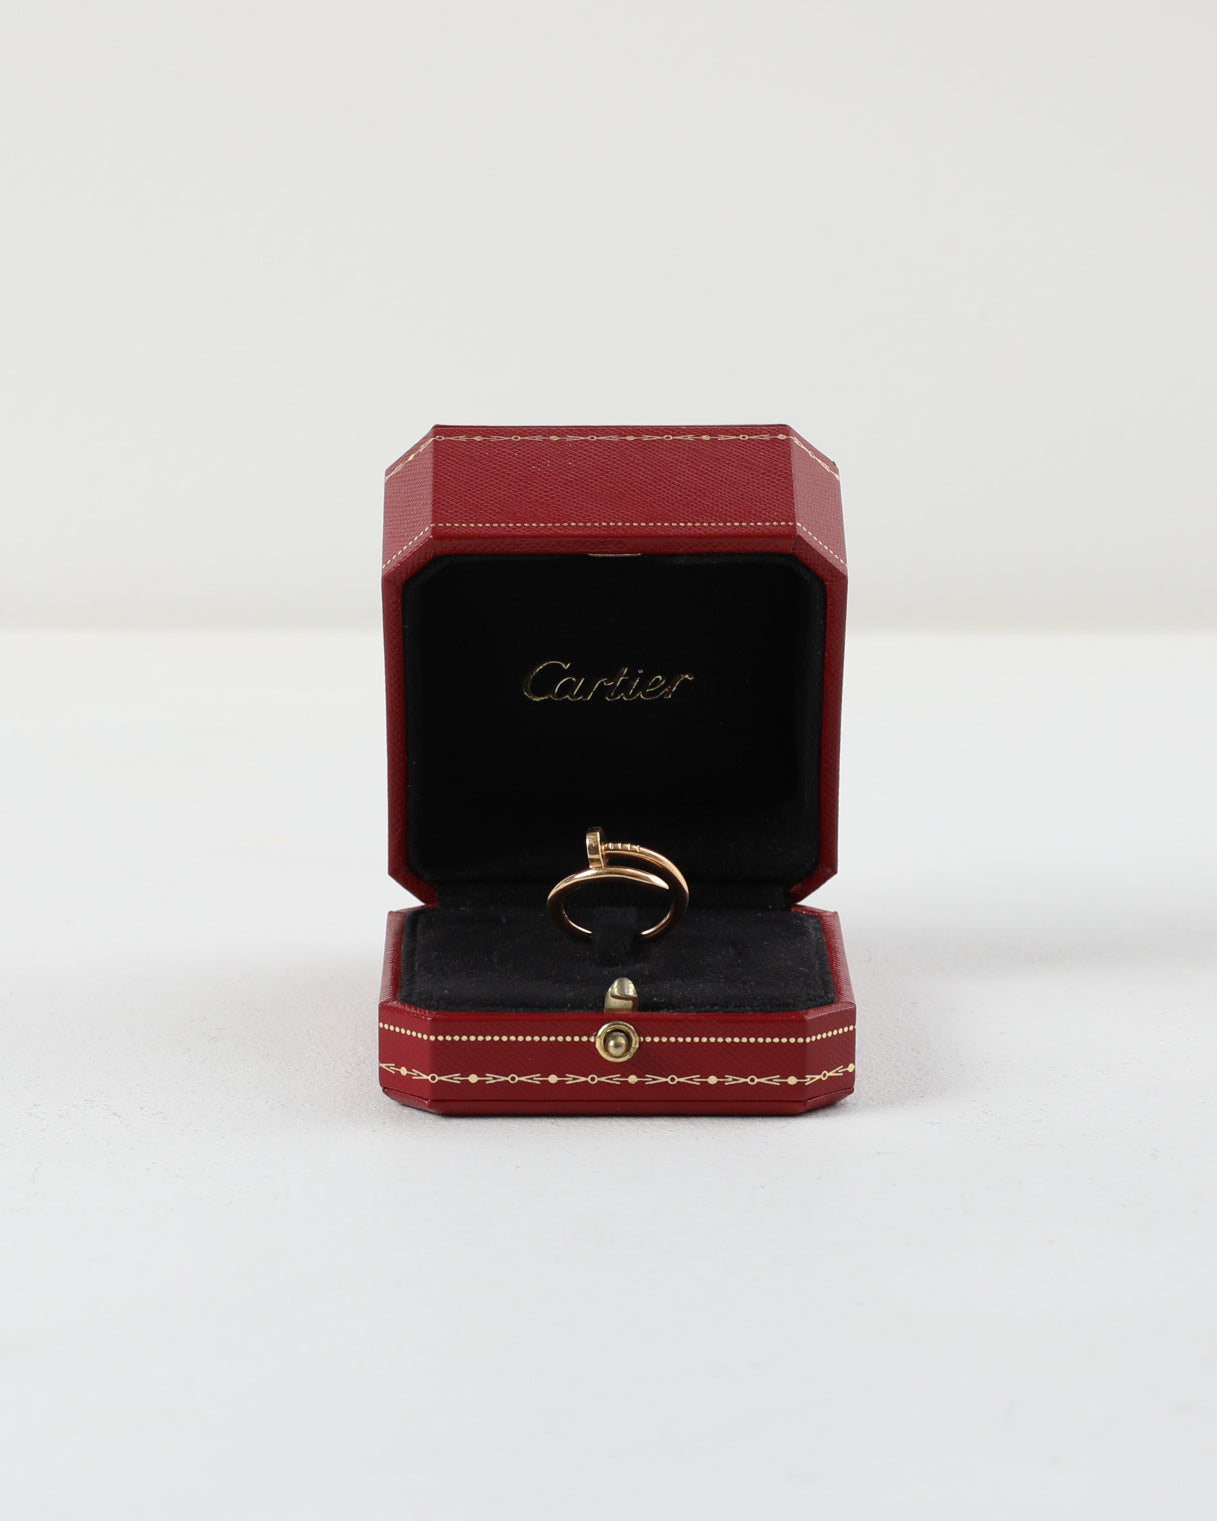 Cartier Juste Un Clou Rose Gold size 56 (Women's)